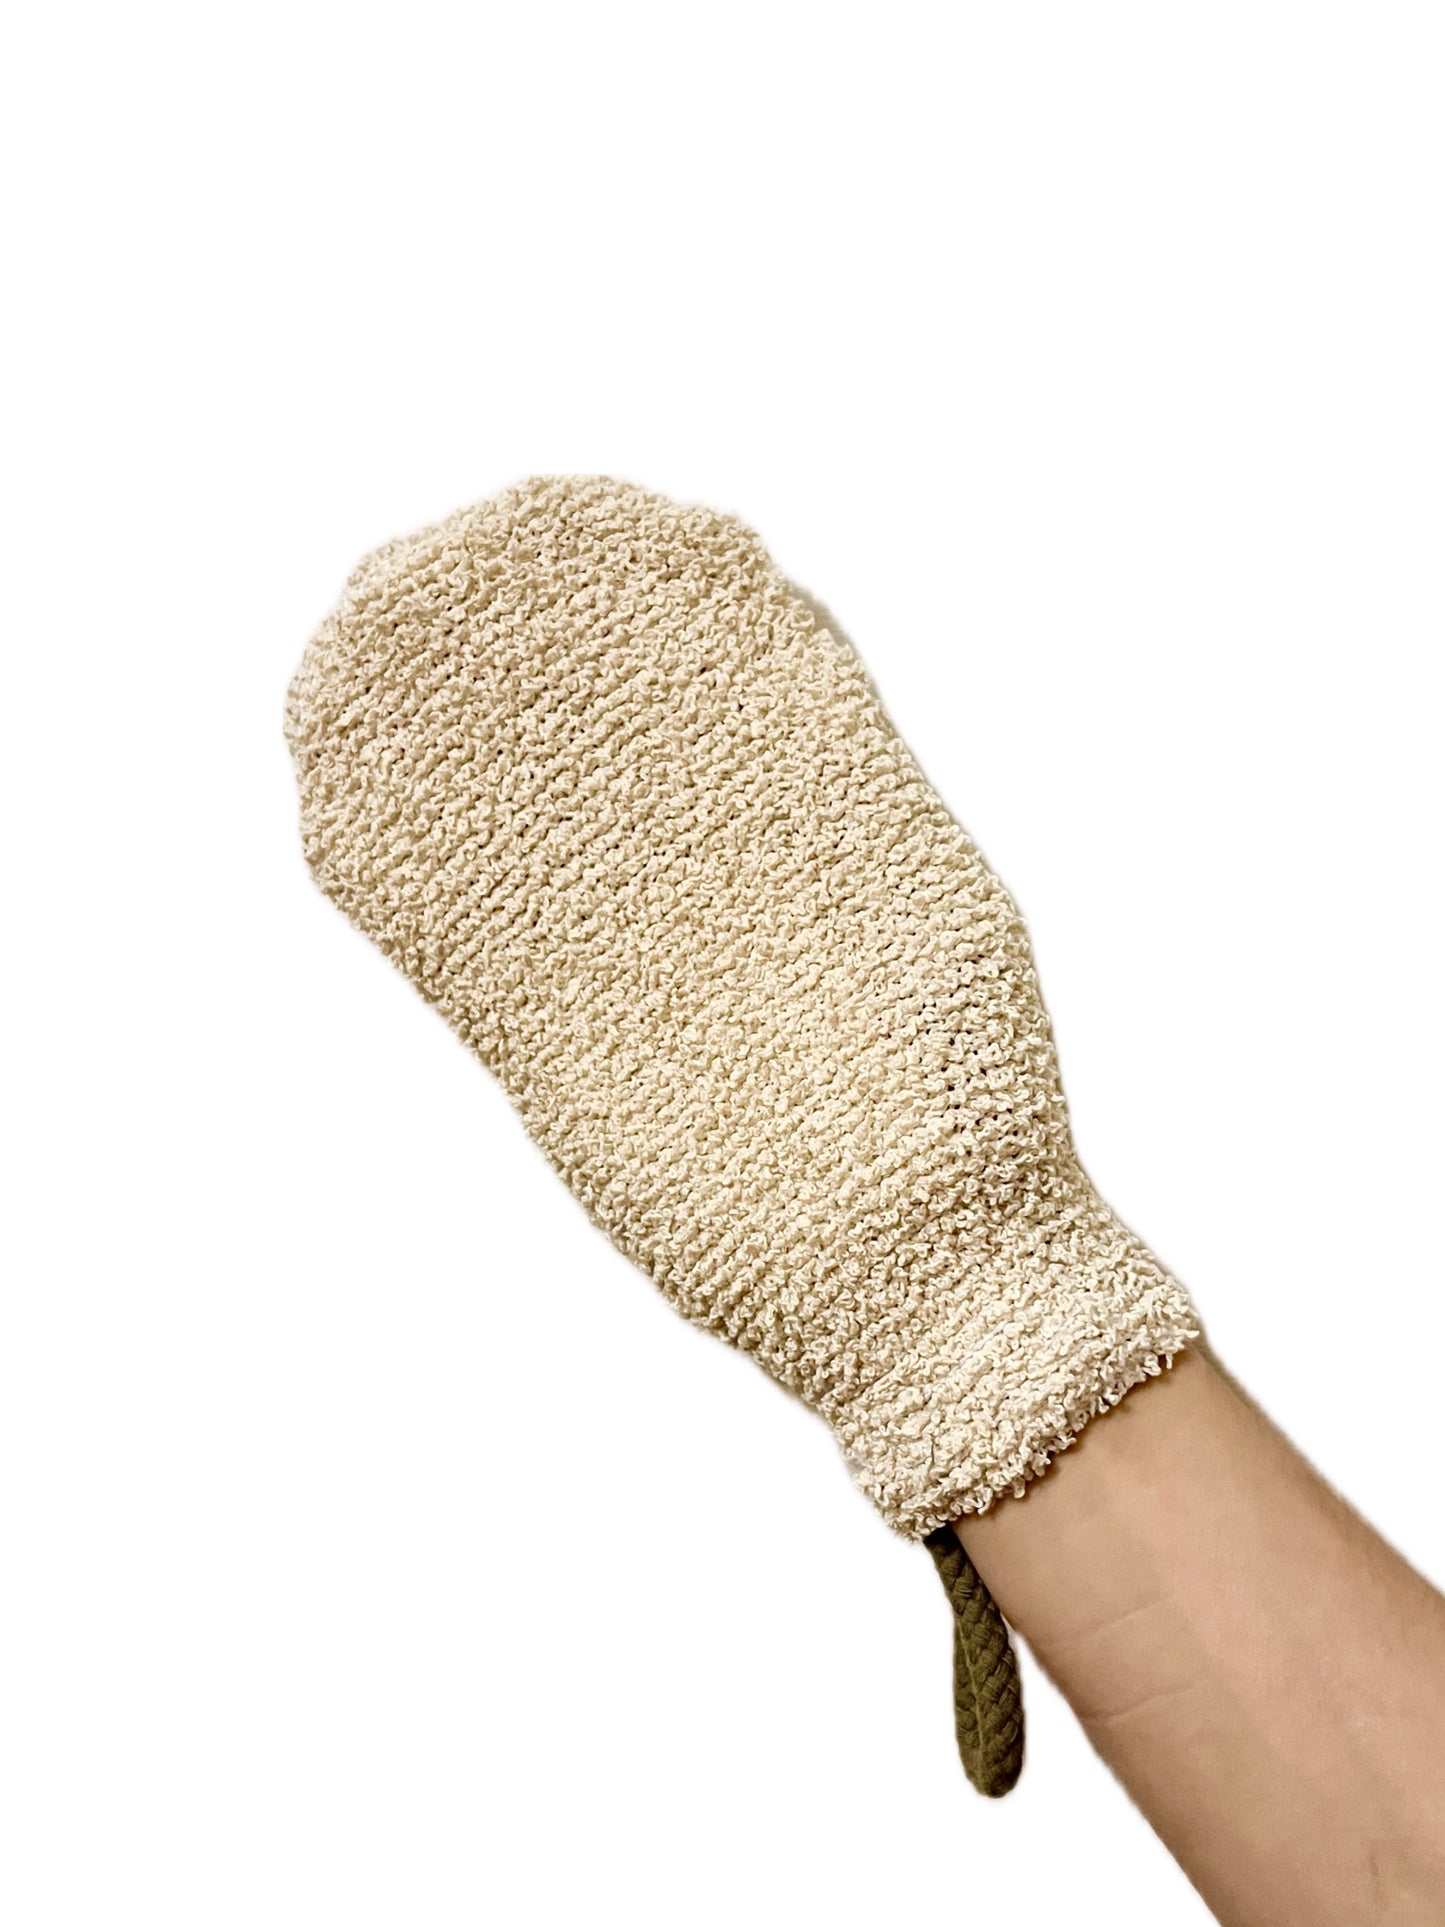 Shower glove